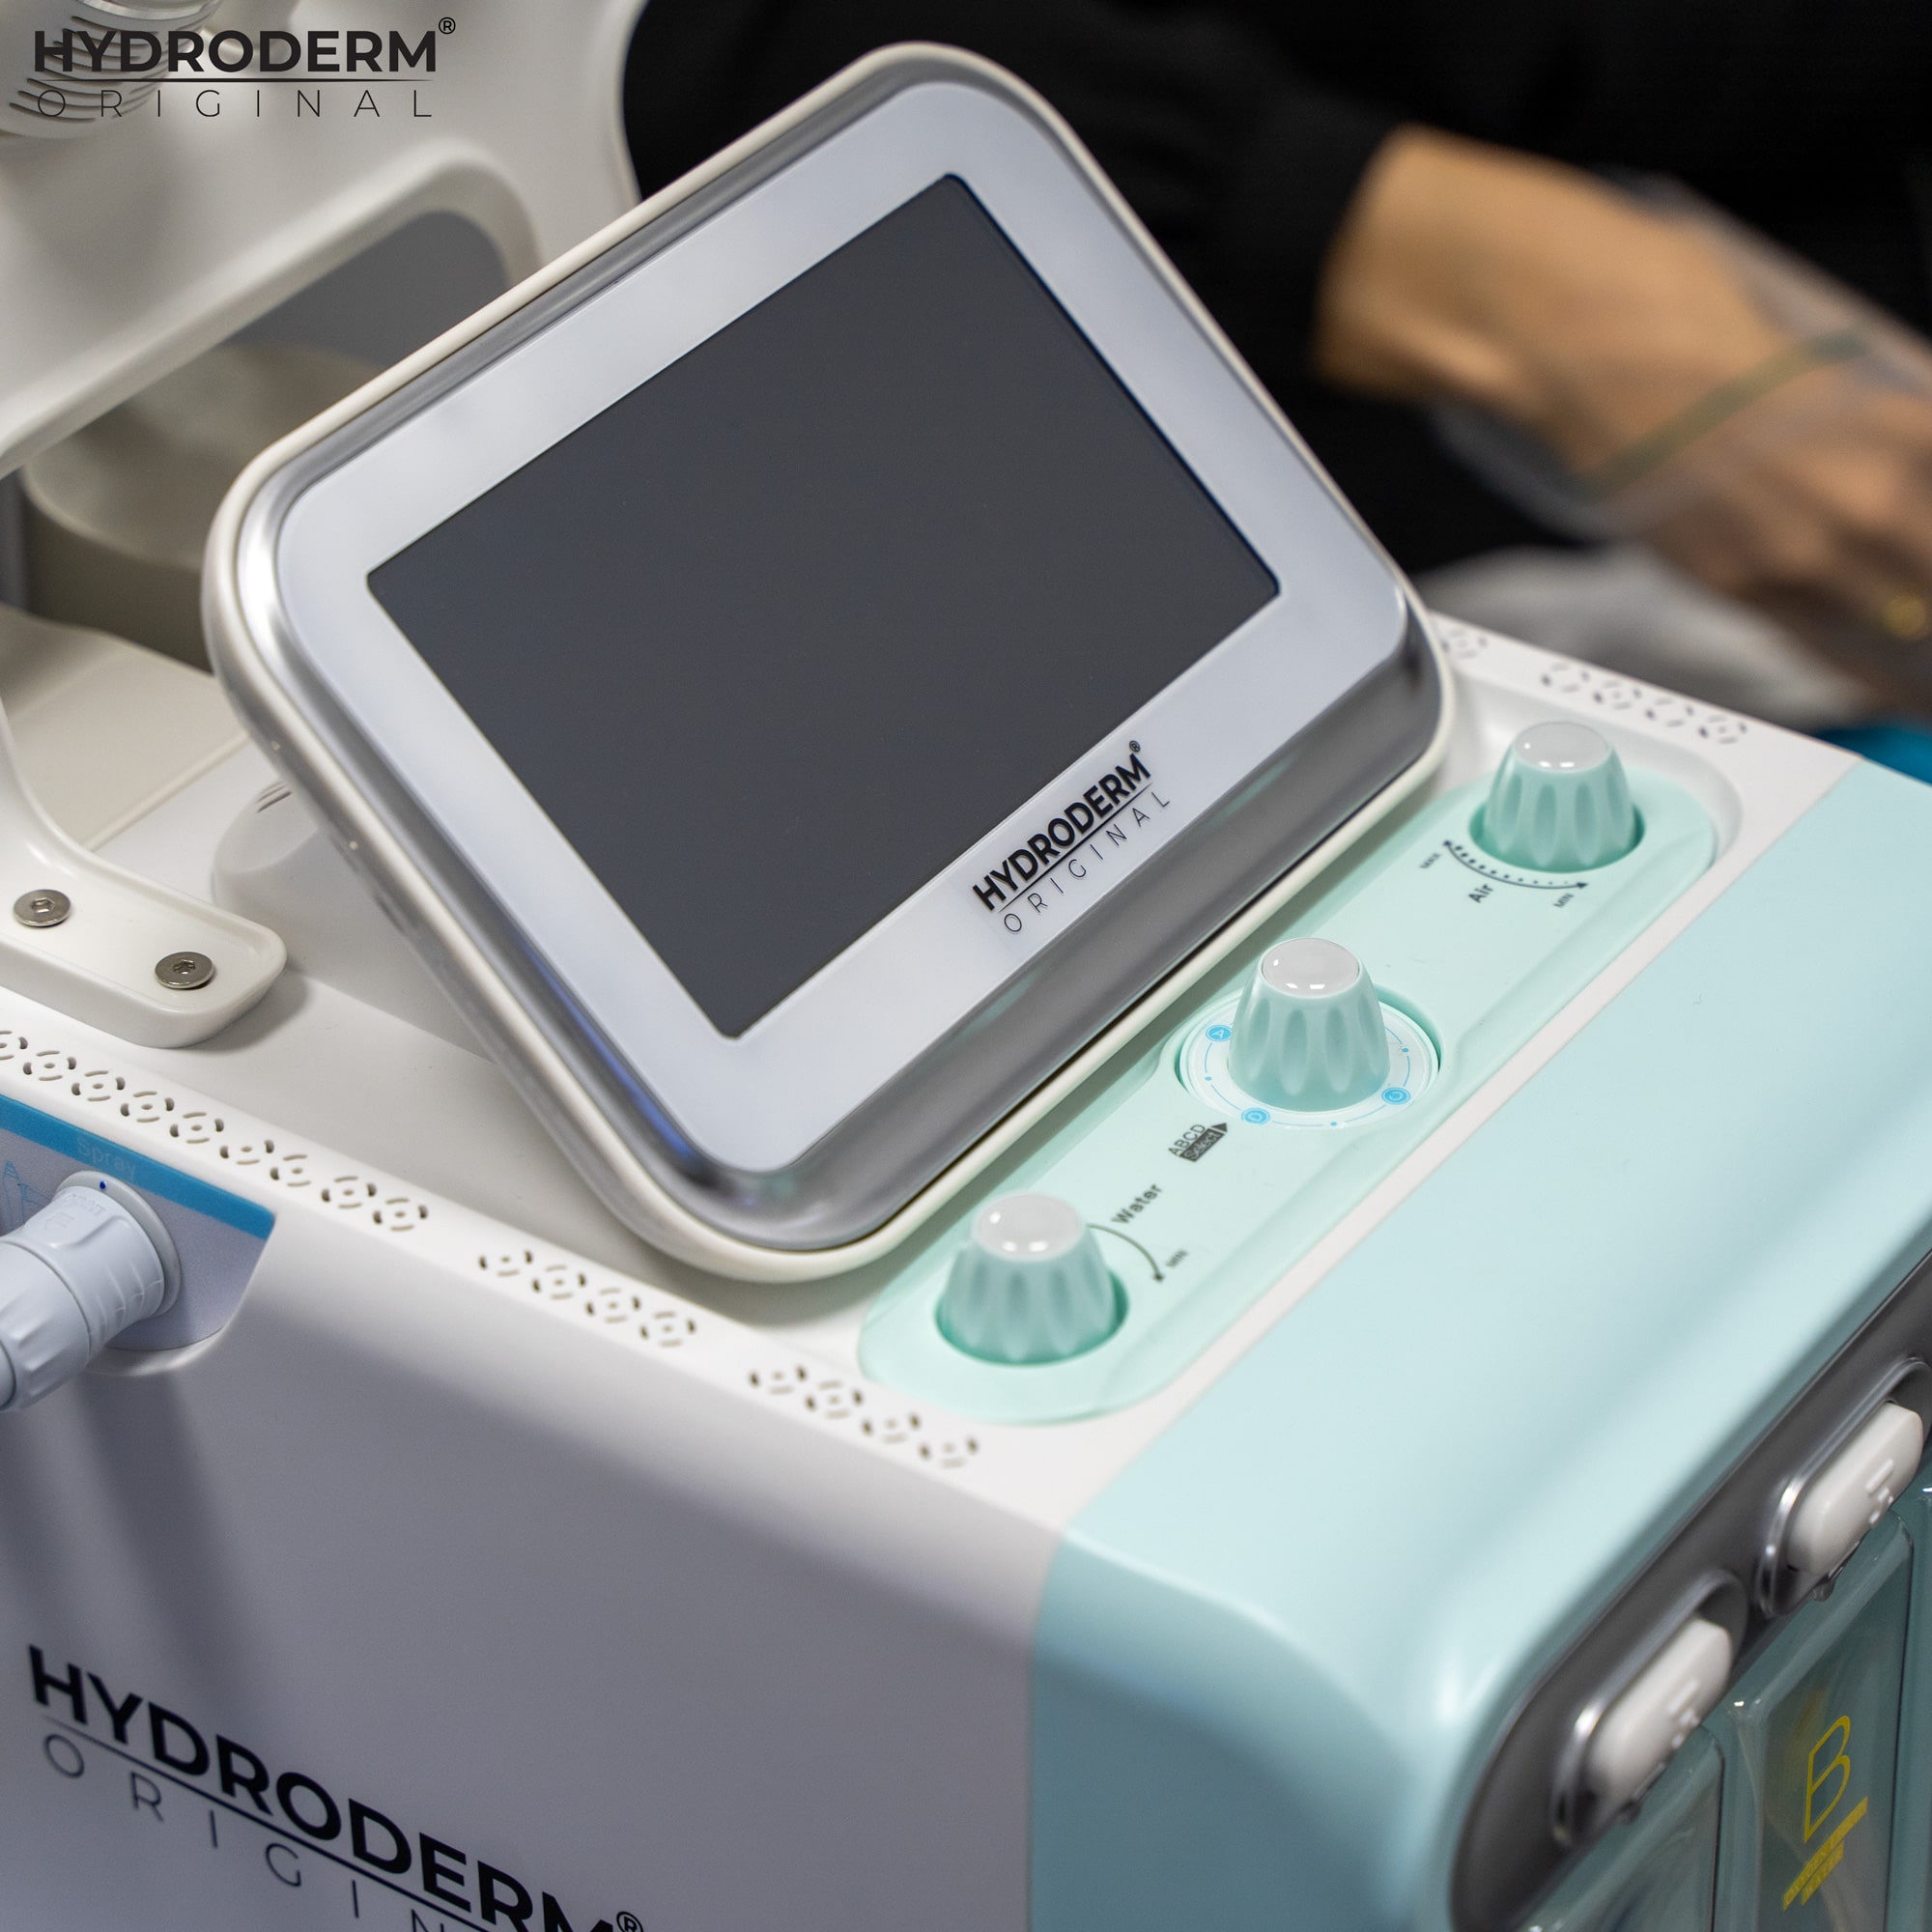 Naszą oryginalną maszynę Hydroderm obsługuje się za pomocą interfejsu dotykowego